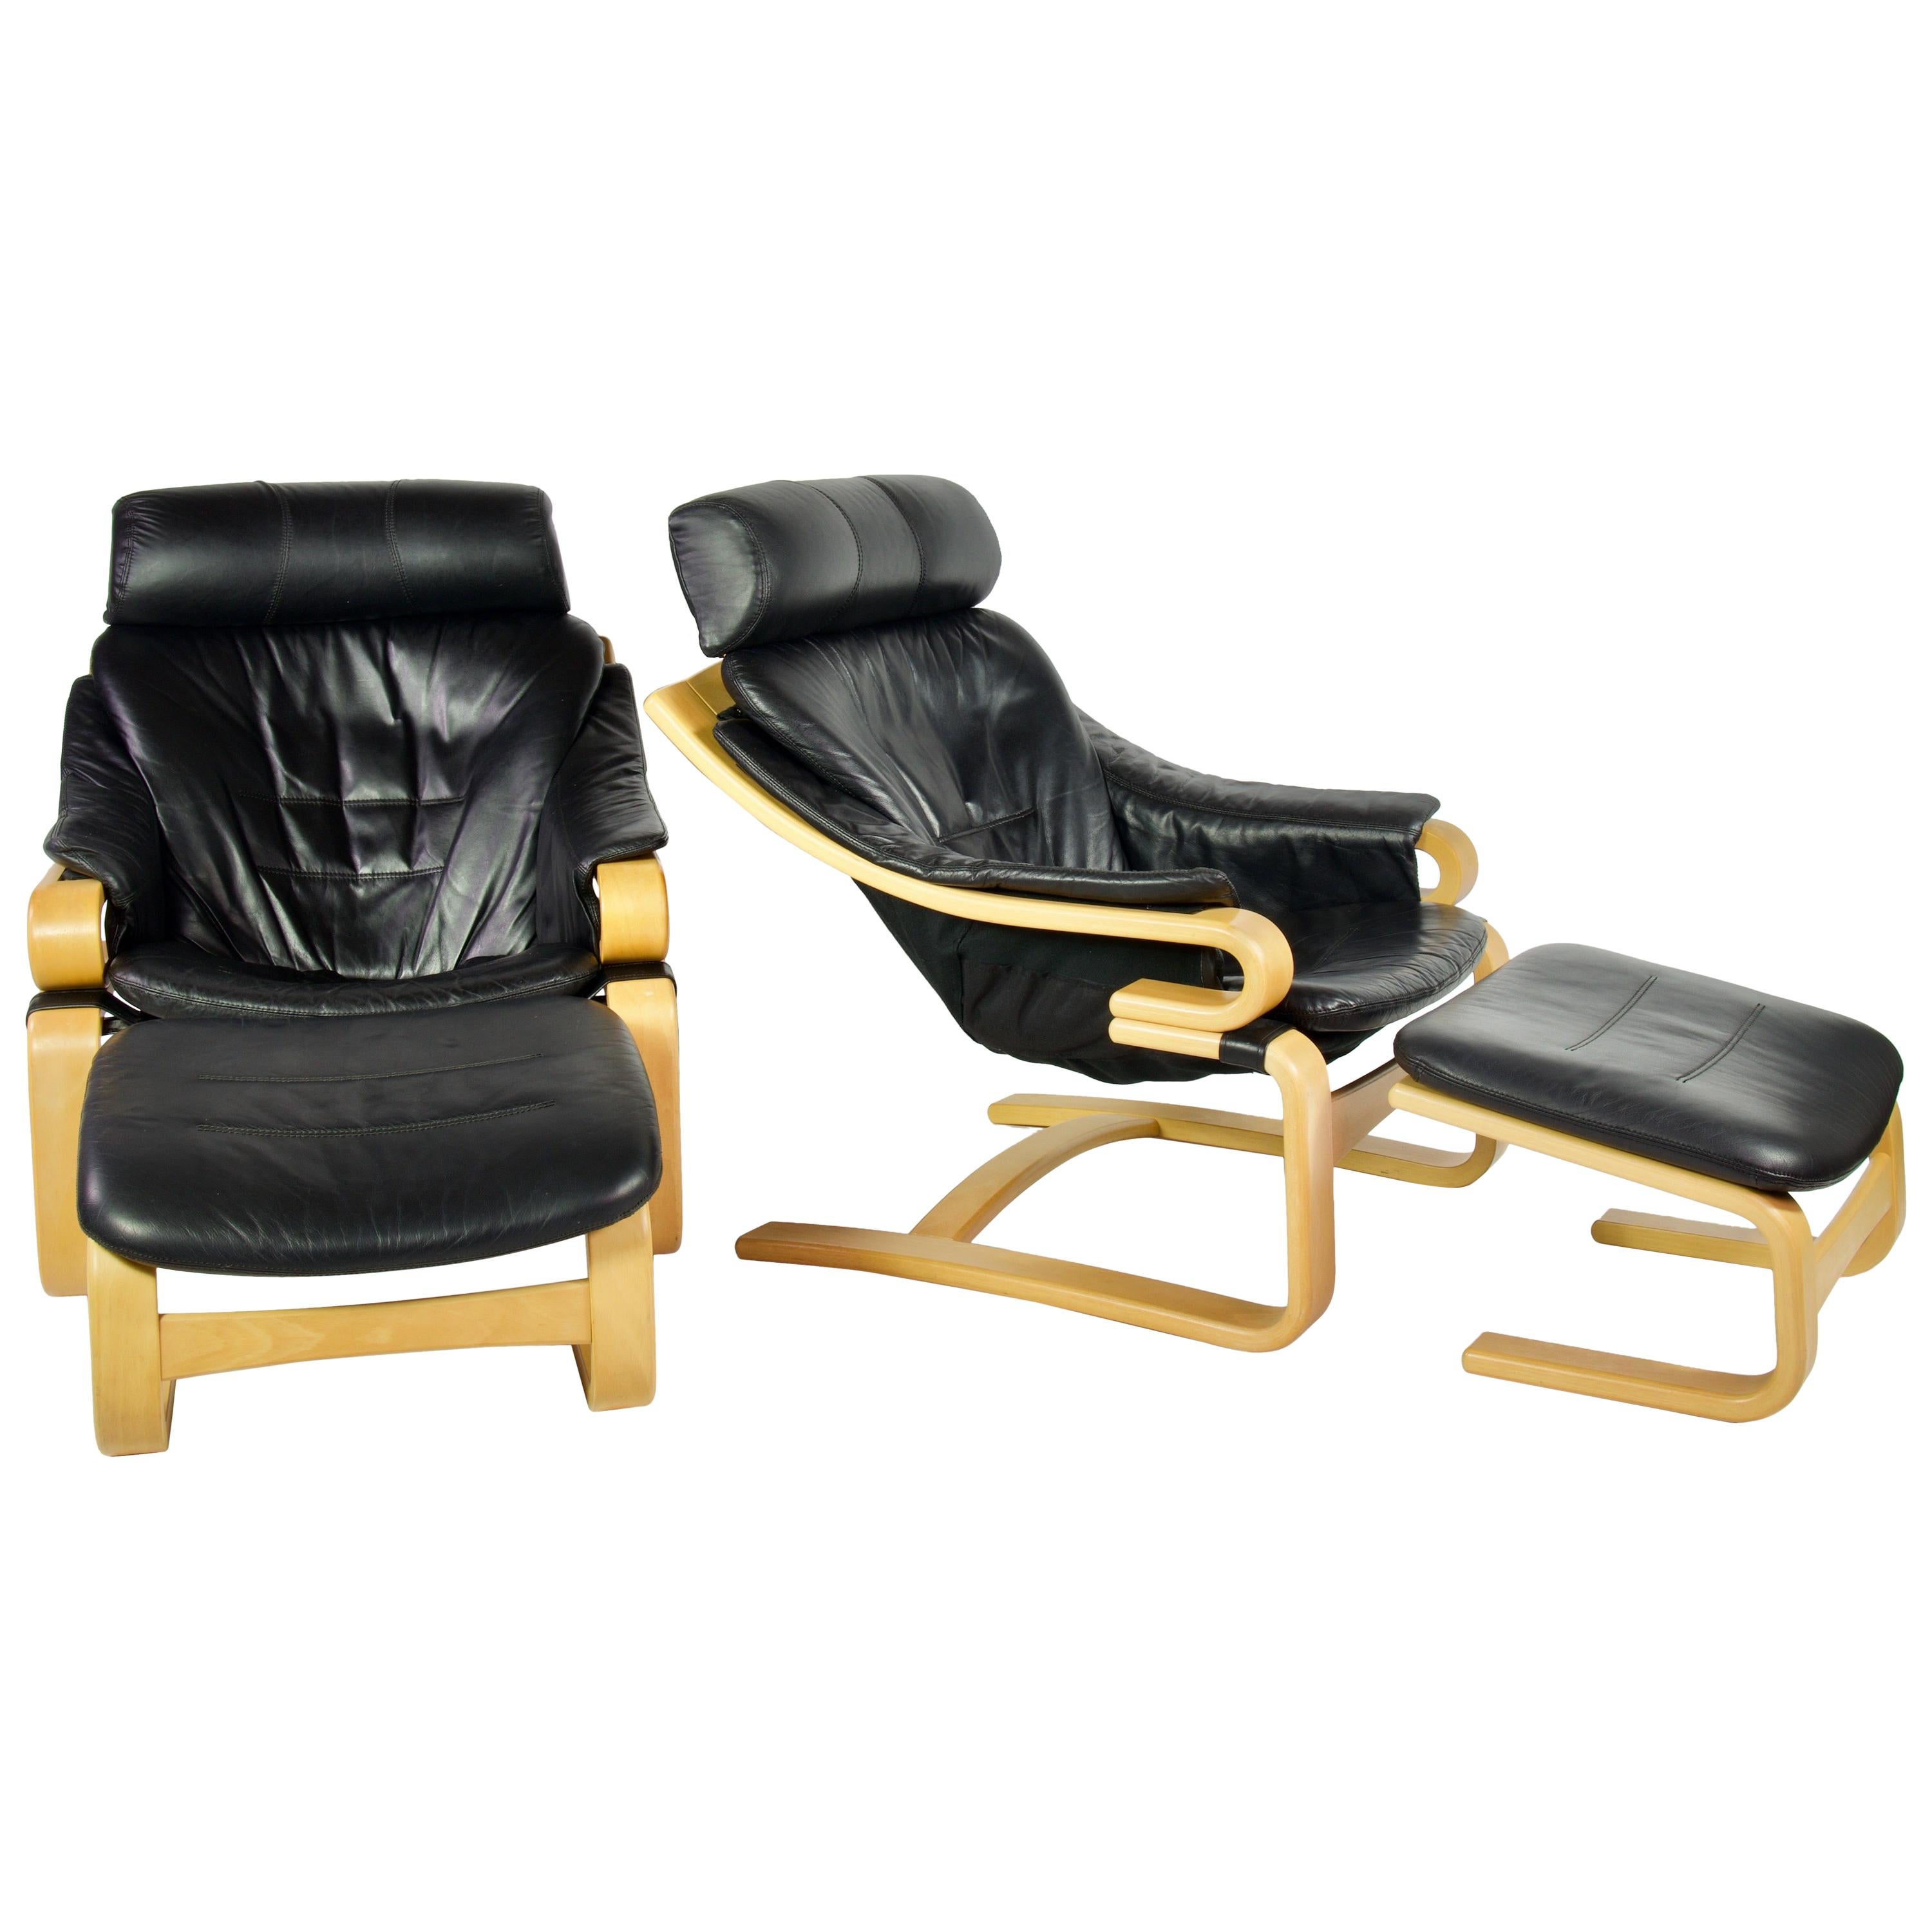 Kroken Chair - For Sale on 1stDibs kroken lounge chair, kroken stol, nelo kroken chair